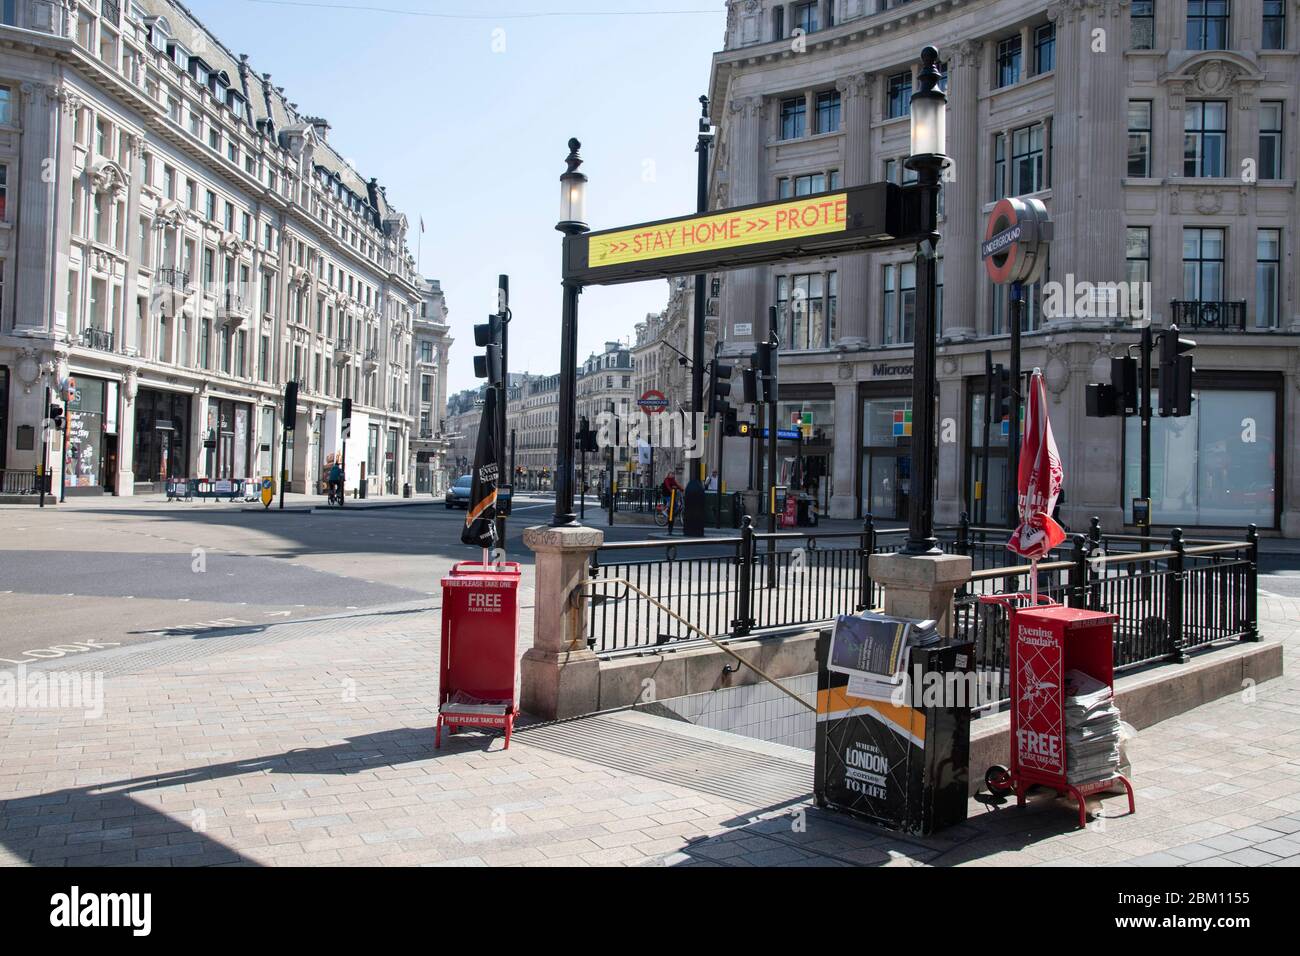 London, Grossbritannien. Mai 2020. Oxford Circus - Londons Straßen und Sehenswürdigkeiten sind aufgrund der Sperrung des Corona-Virus verlassen. London, 05.05.2020 Quelle: dpa/Alamy Live News Stockfoto